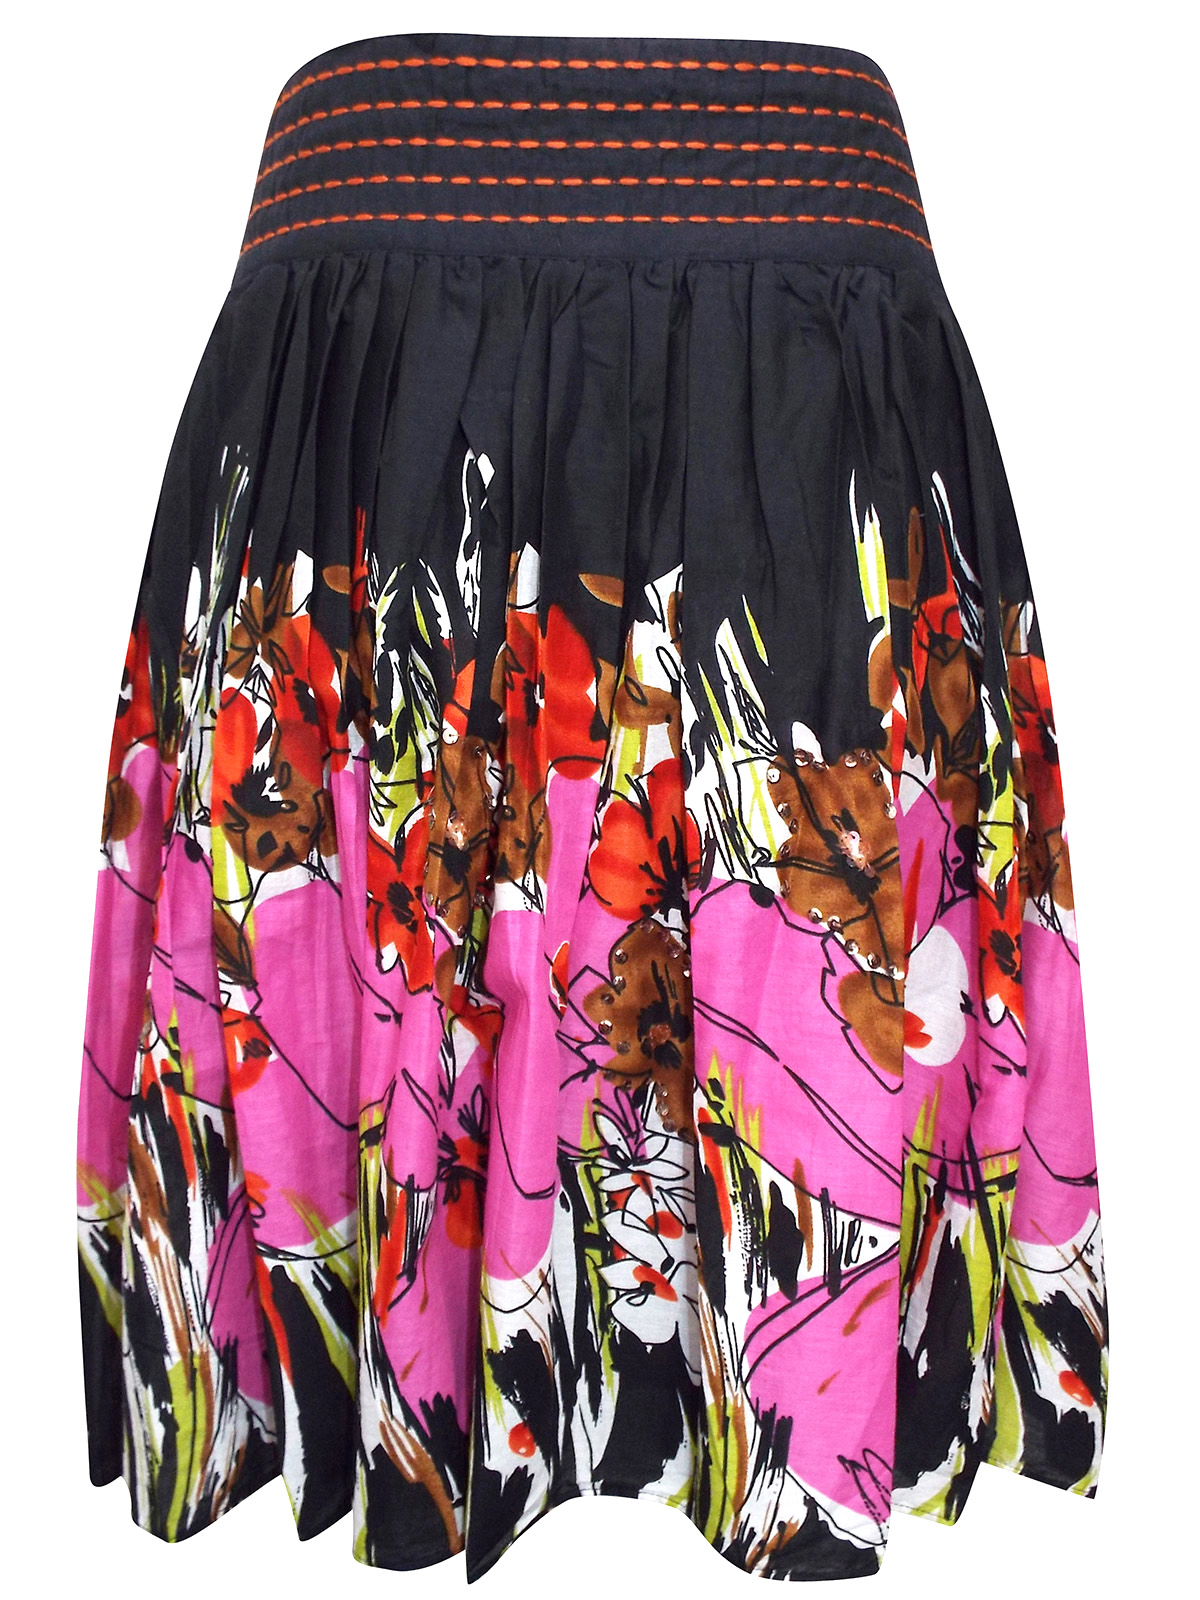 M&Co - - M&Co BLACK Pull On Floral Print Sequin Embellished Skirt ...